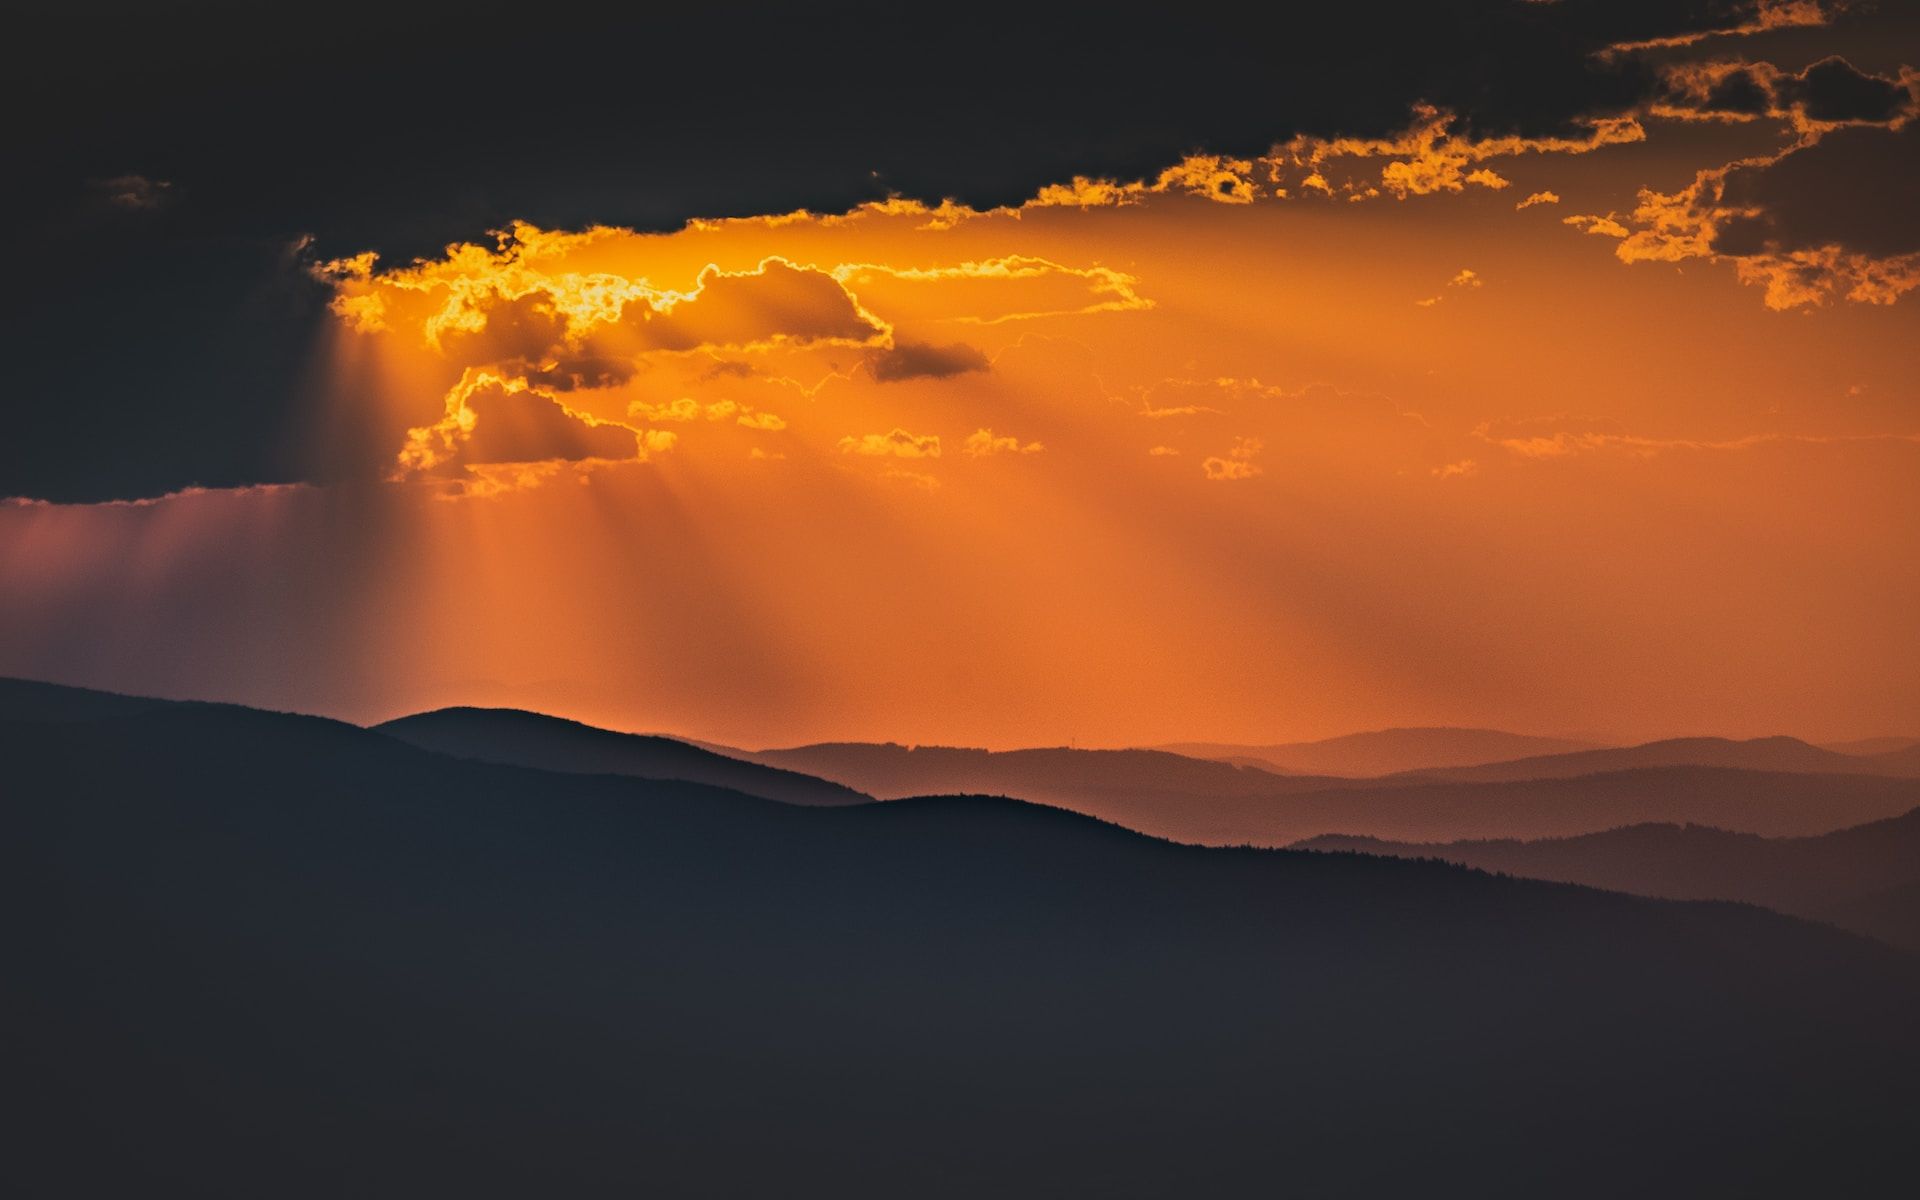 Soleil caché derrière des nuages, éclairant les montagnes - Photo by Marek Piwnicki on https://unsplash.com/fr/photos/silhouette-de-montagne-au-coucher-du-soleil-xjTGy_vS0eA